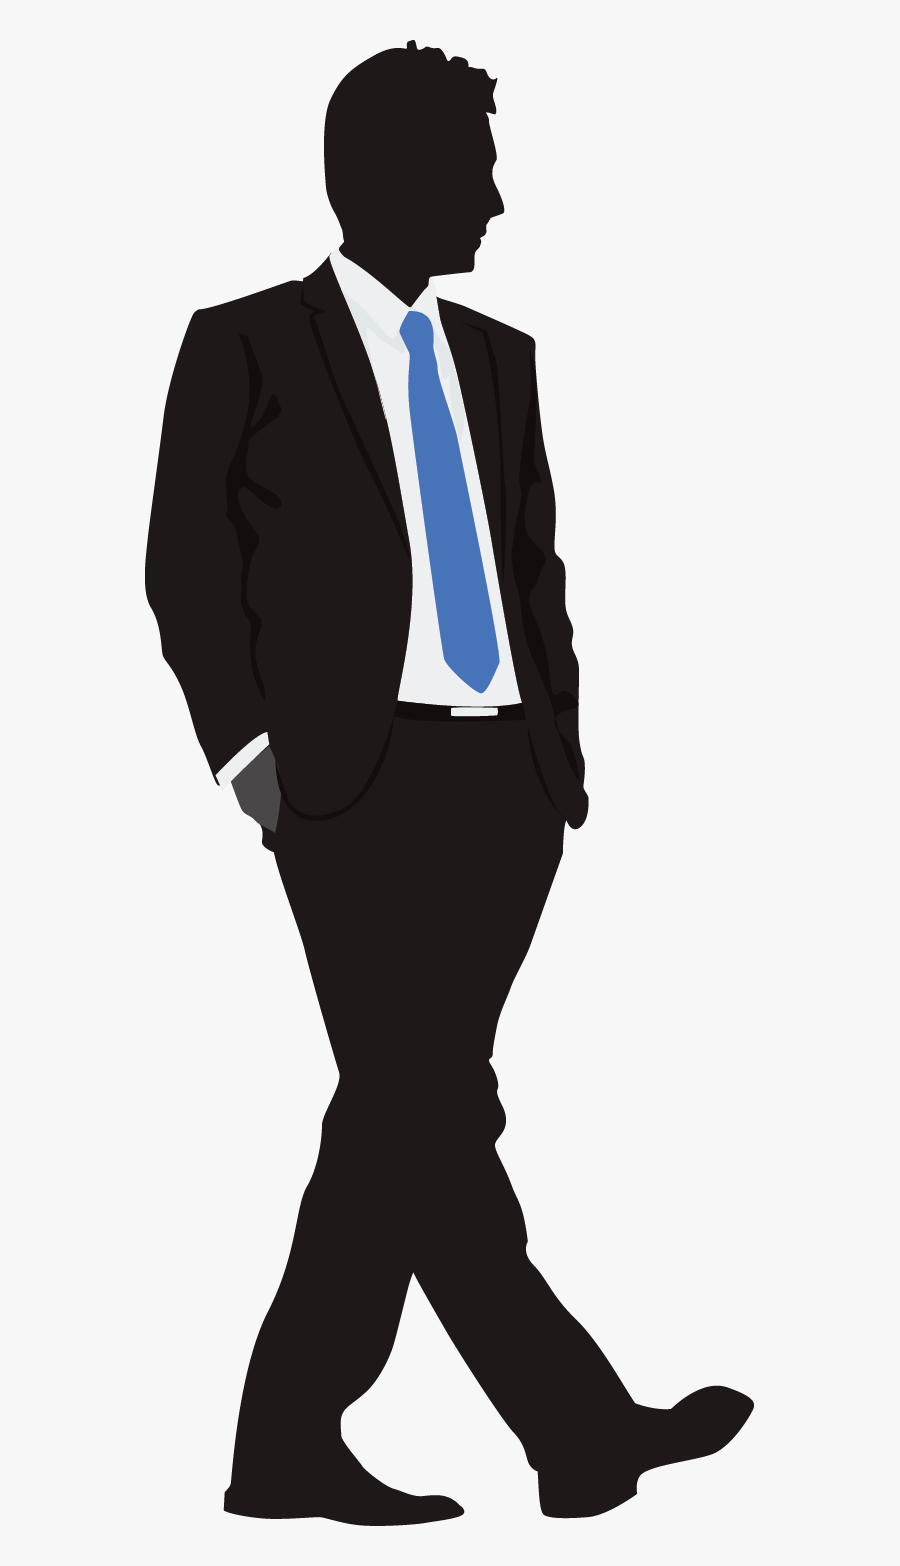 Transparent Man In Suit Silhouette Png - Illustration, Transparent Clipart